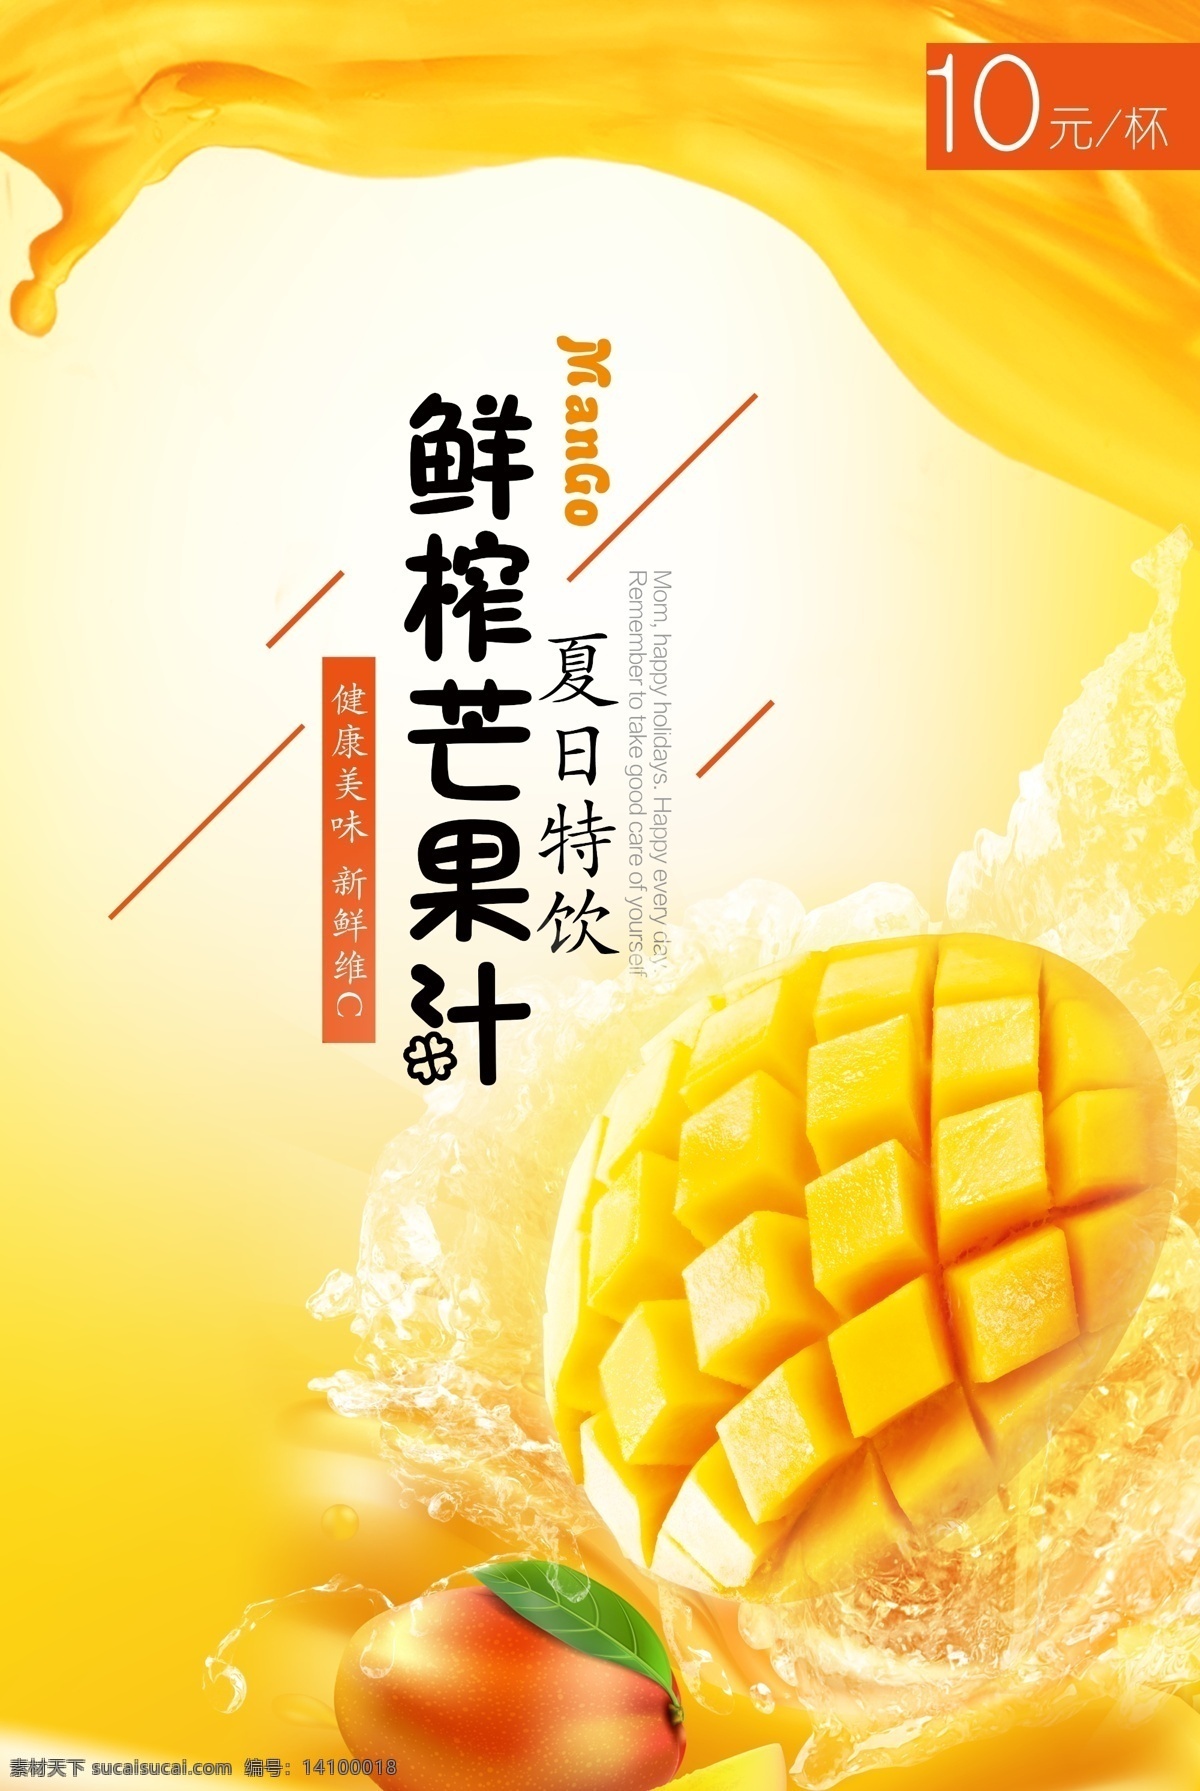 鲜榨 芒果汁 饮品 海报 冰镇 夏日 炎热 健康美味 新鲜 维c 价格 宣传海报 专业